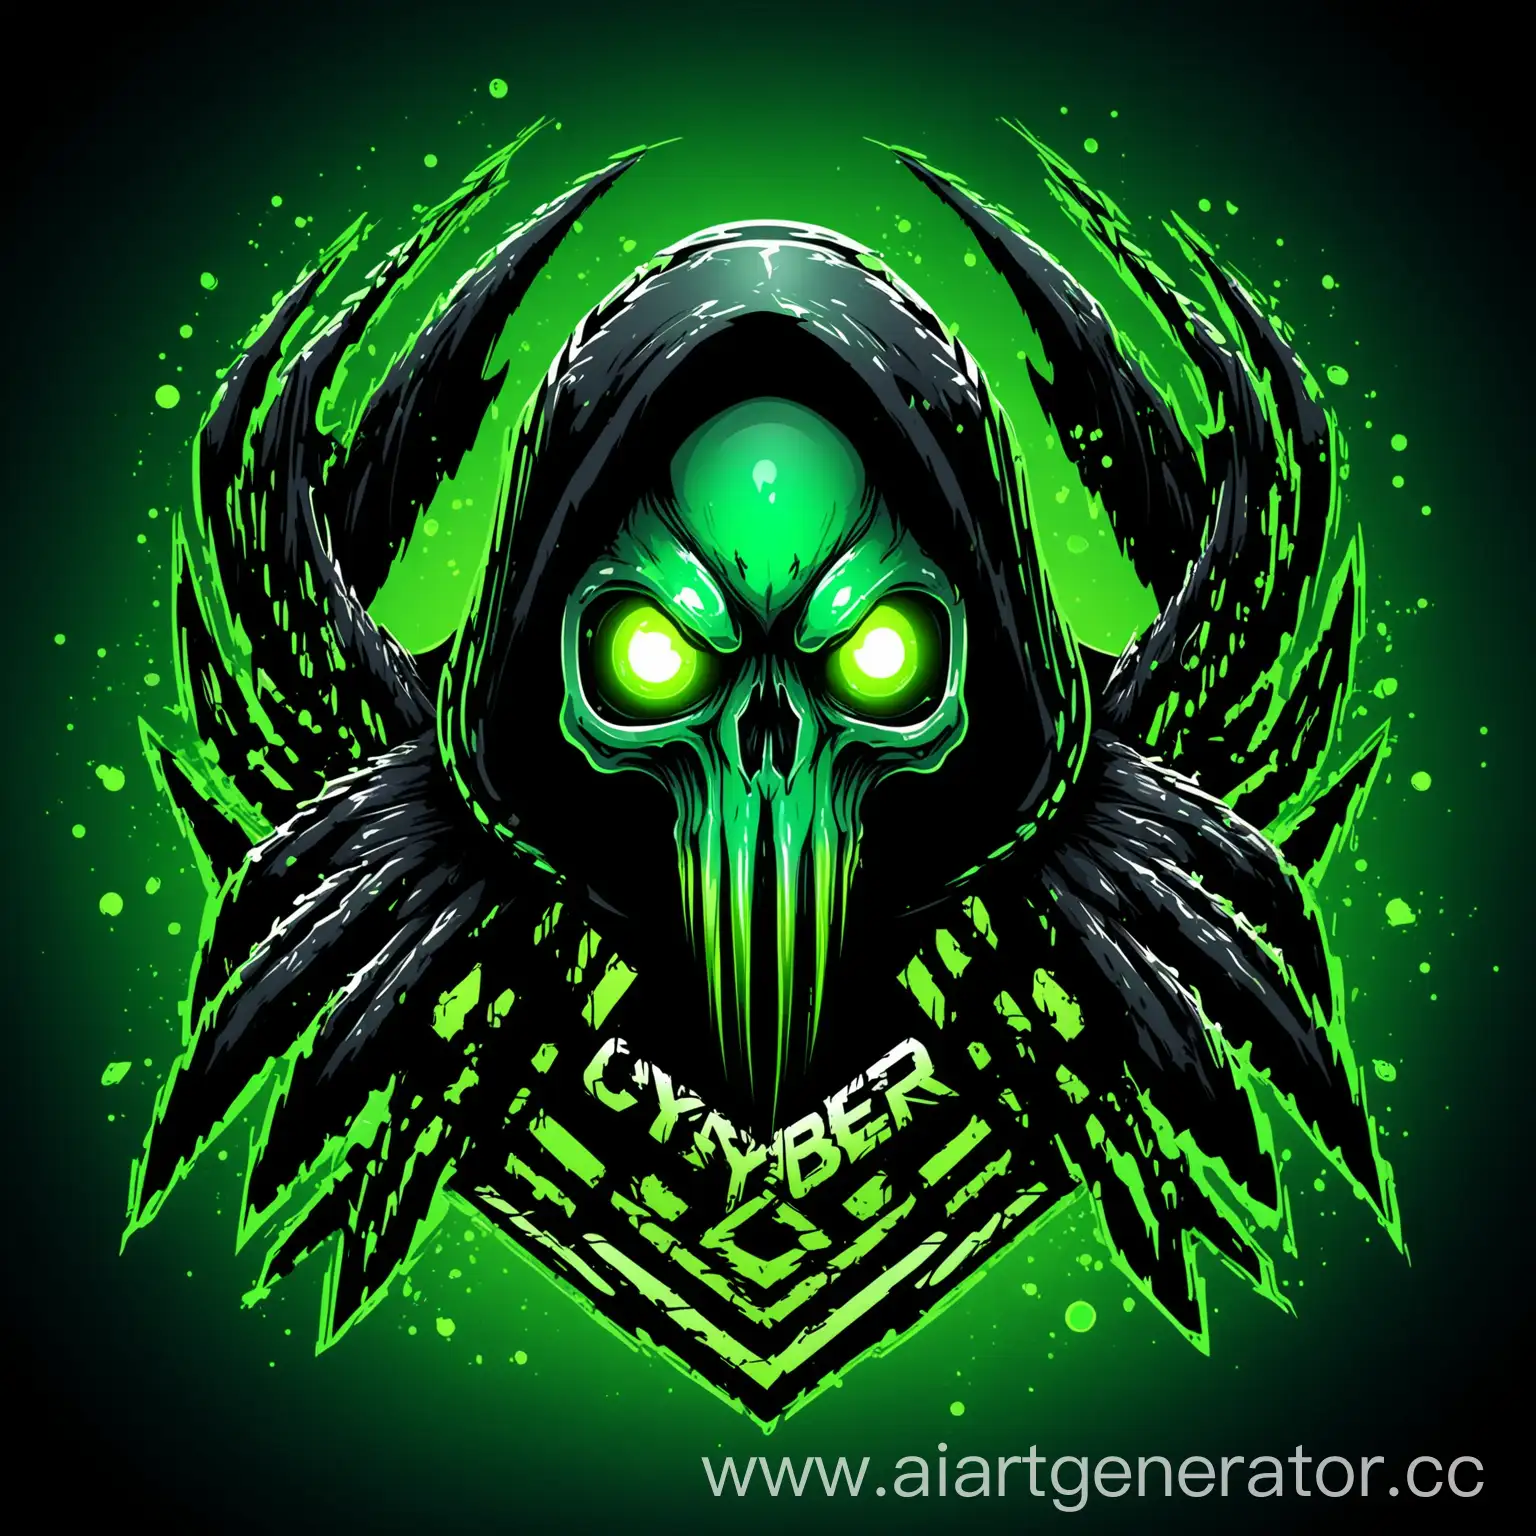 логотип, векторная графика, ультра качество, скверна, киберспорт, чёрный цвет, зелёный цвет, зелёное свечение, череп ворона